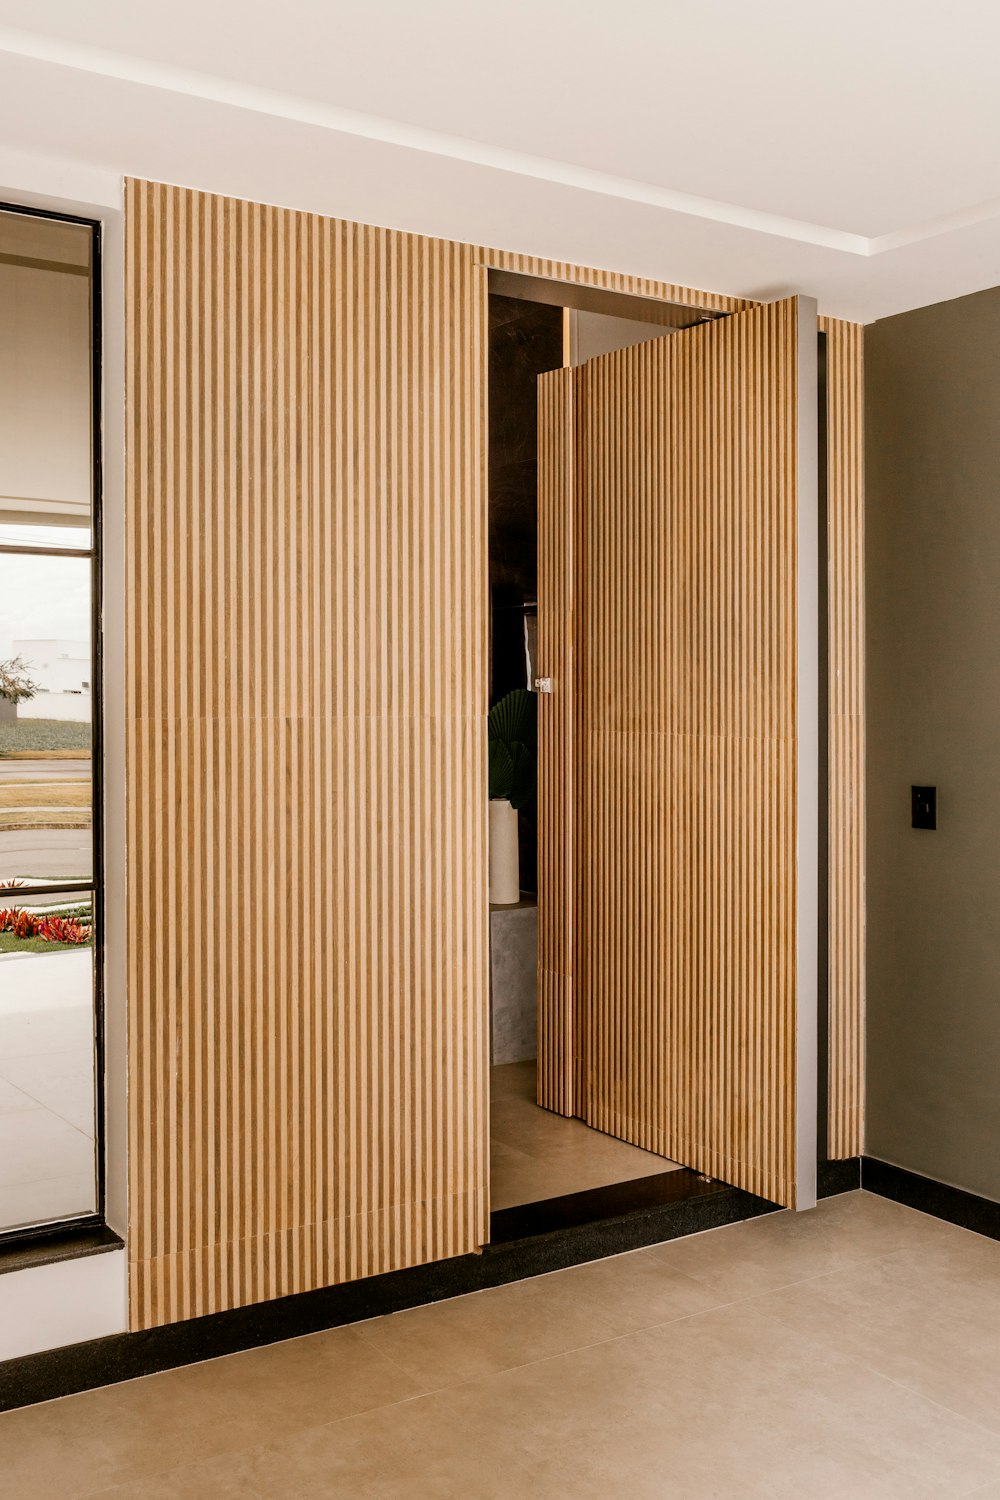 a room that has a wooden door in it